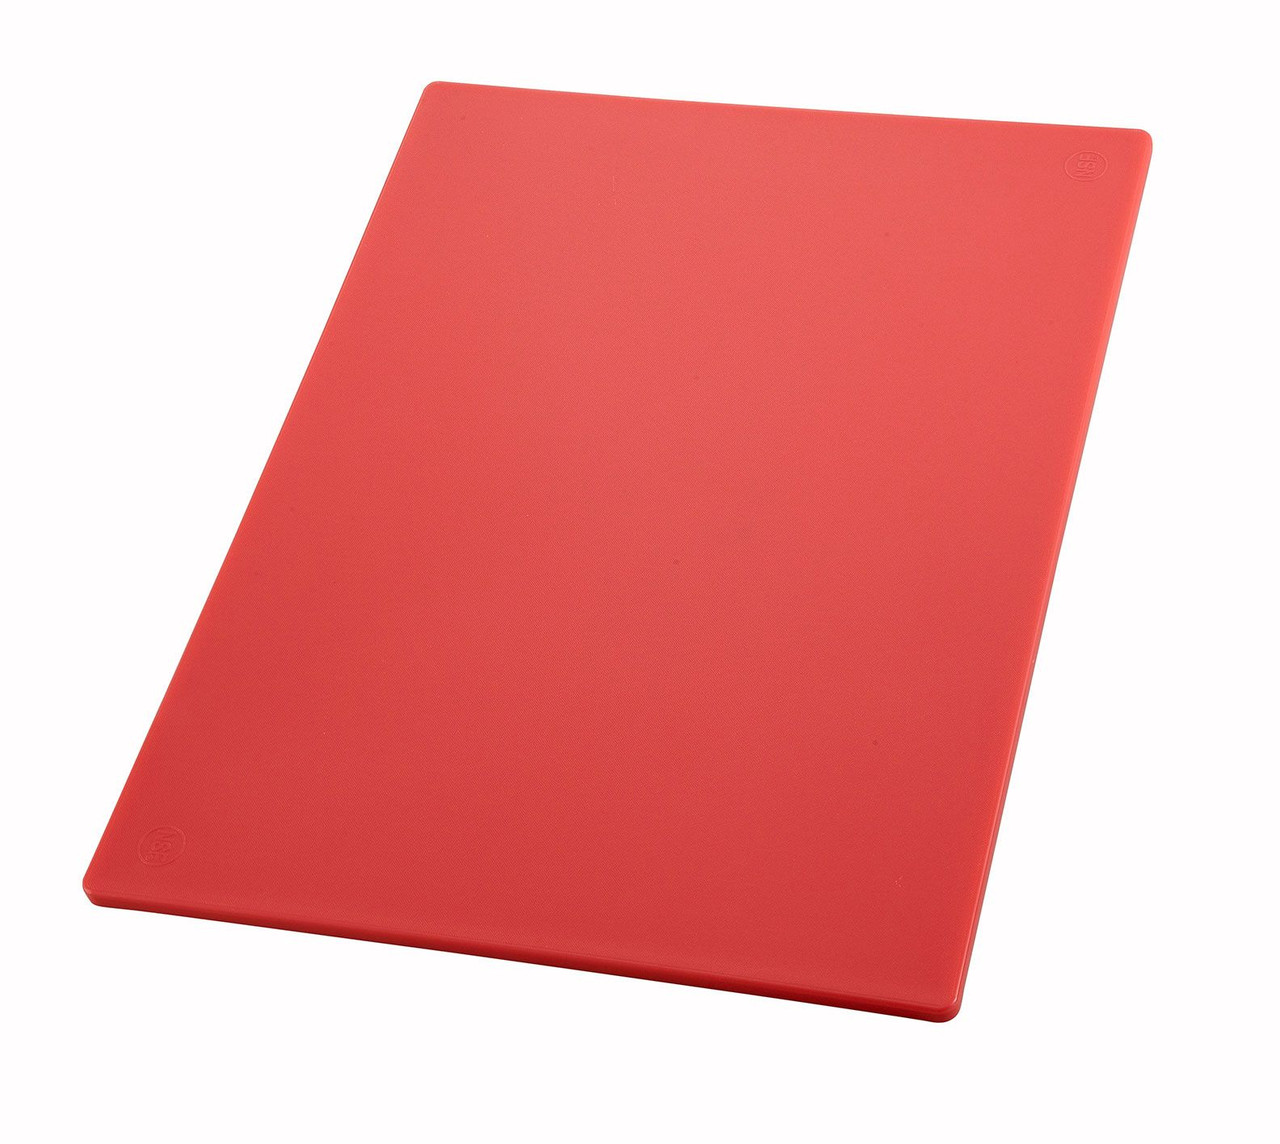 Winco CBRD-1824 18" x 24" Red Cutting Board - Poly